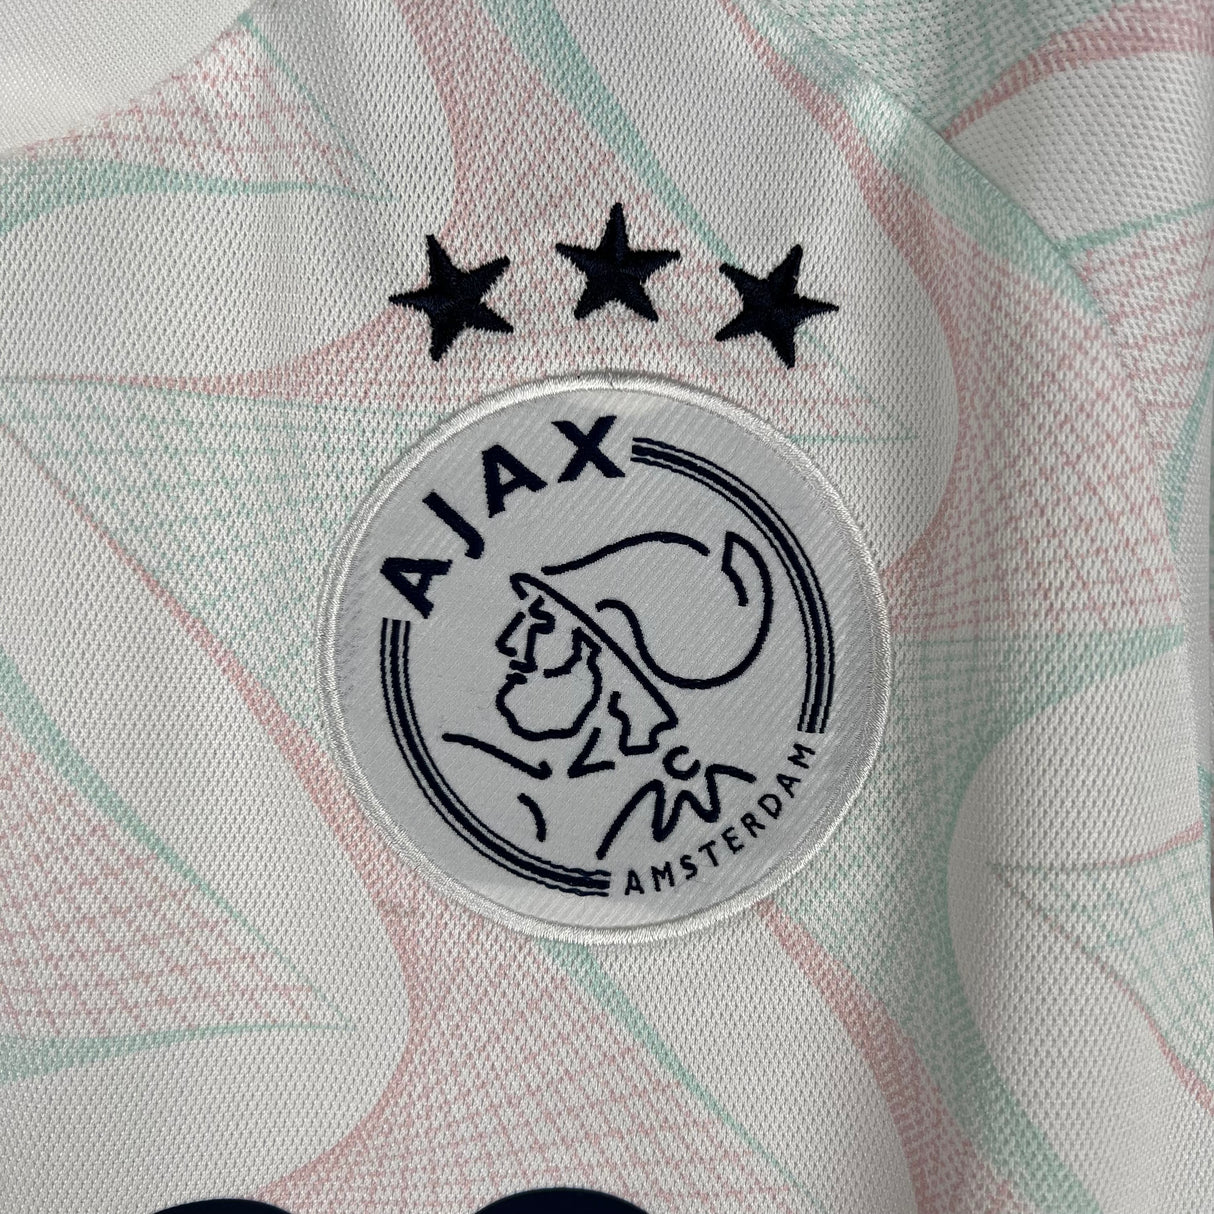 Ajax 23/24 away